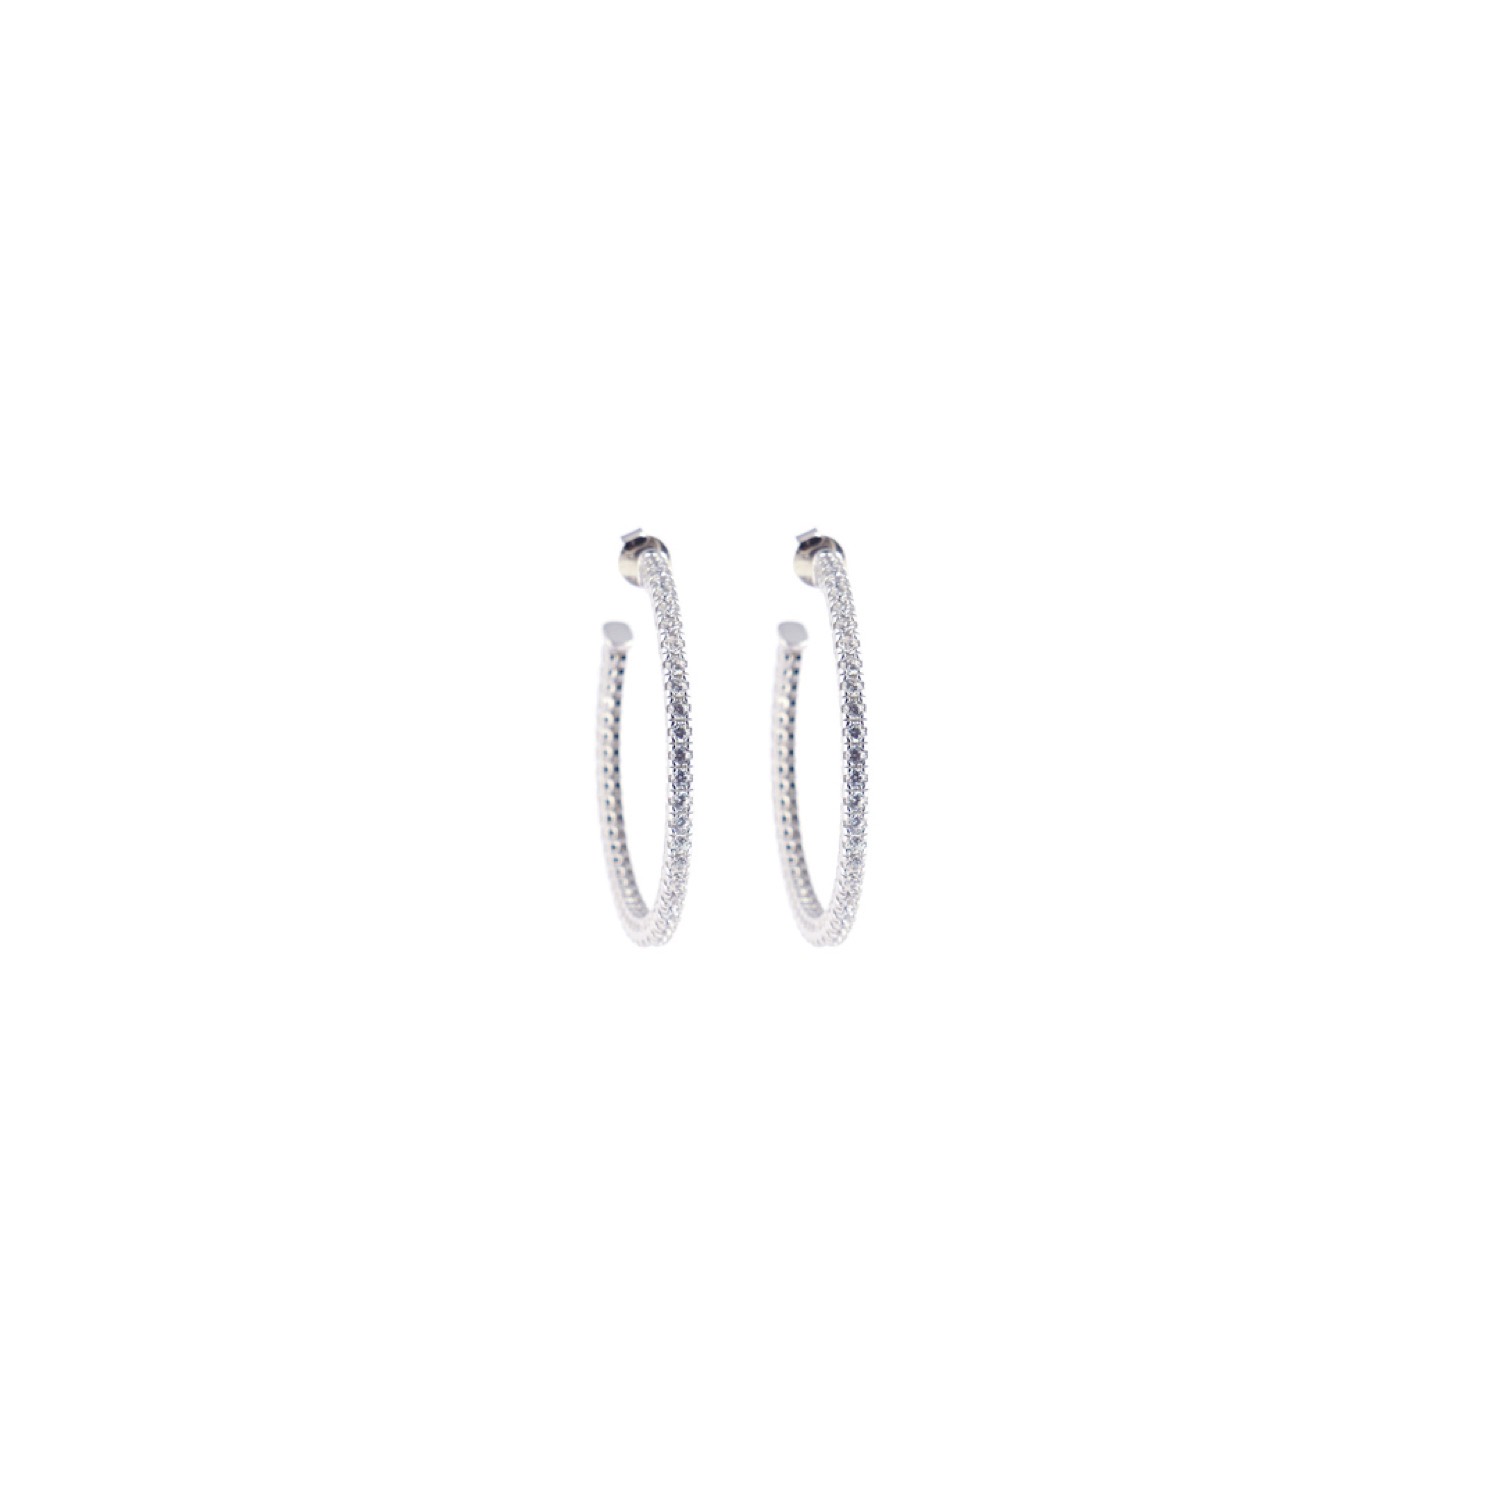 varam_earrings_102022_round_cut_white_stone_ring_model_hoop_silver_earrings-1